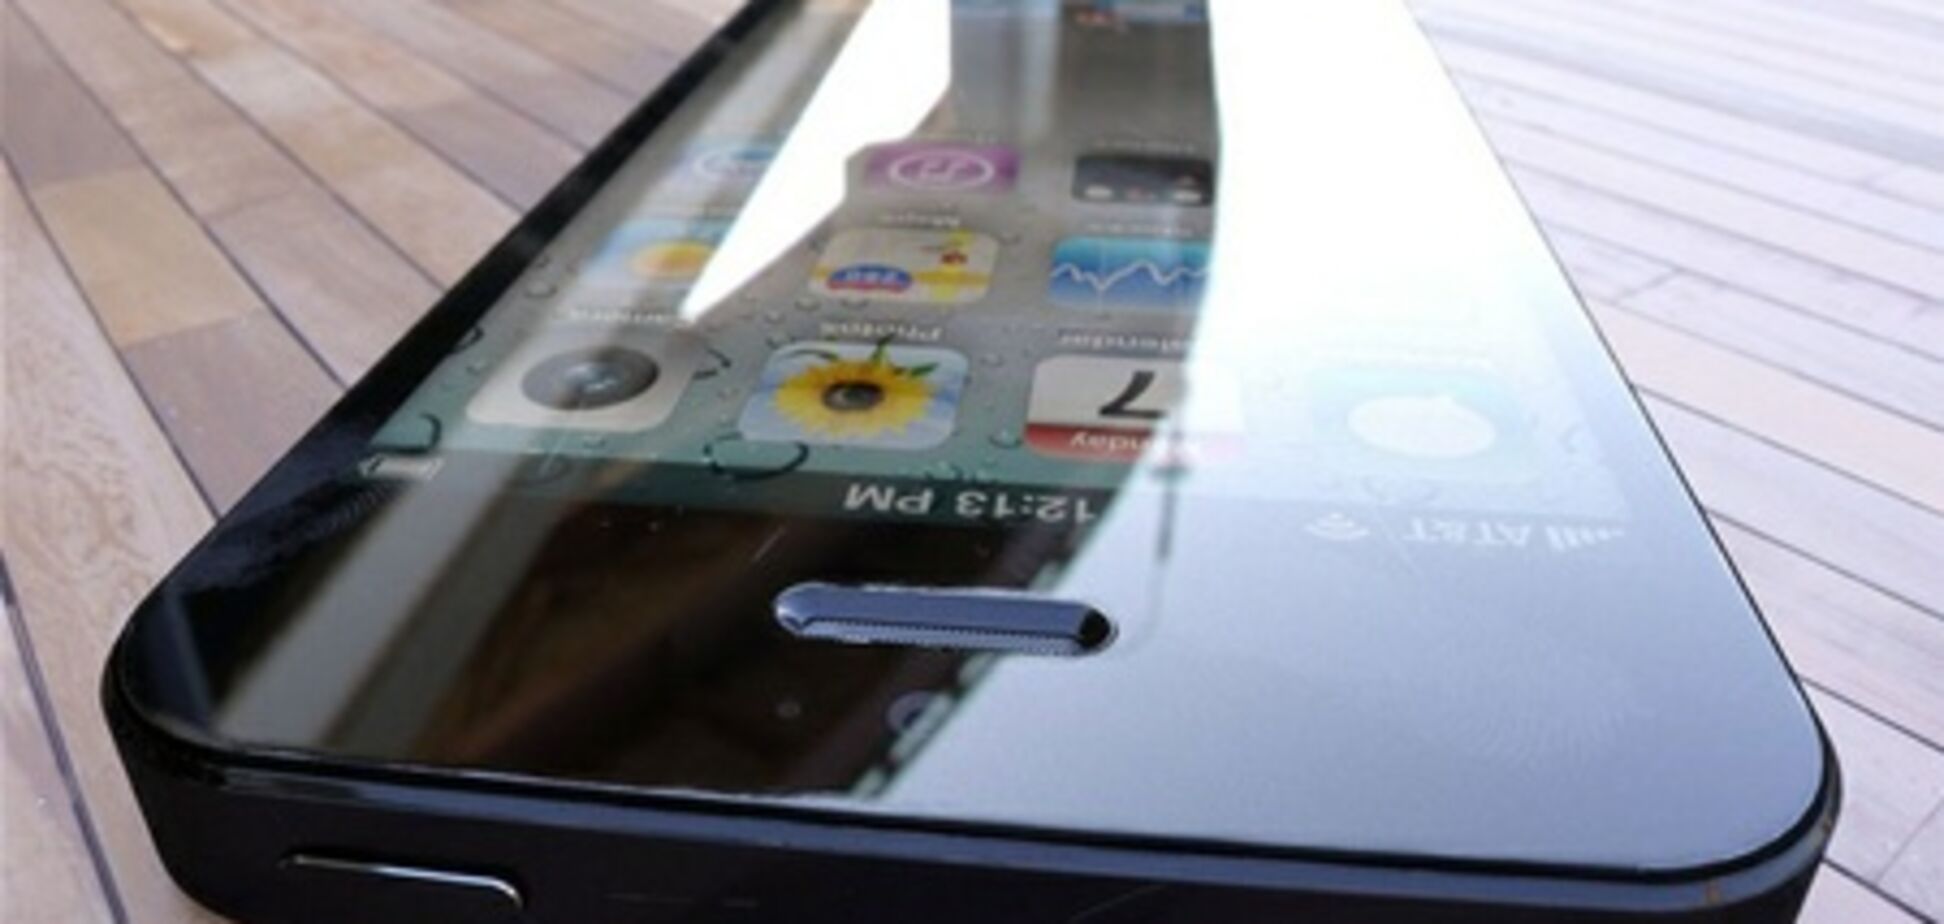 Китайцы выложили в интернете фото нового iPhone 5. Фото 